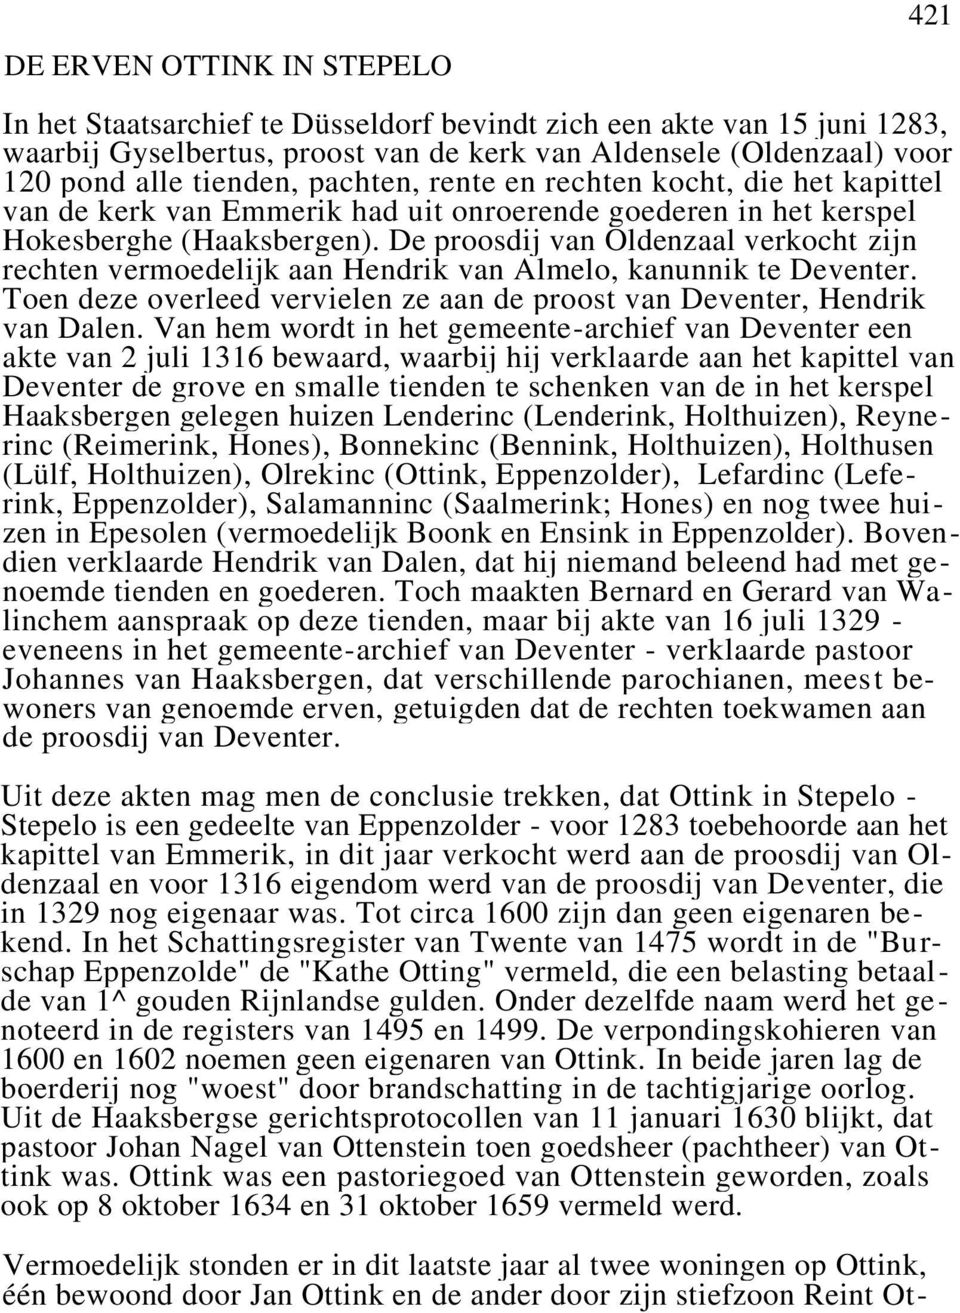 De proosdij van Oldenzaal verkocht zijn rechten vermoedelijk aan Hendrik van Almelo, kanunnik te Deventer. Toen deze overleed vervielen ze aan de proost van Deventer, Hendrik van Dalen.